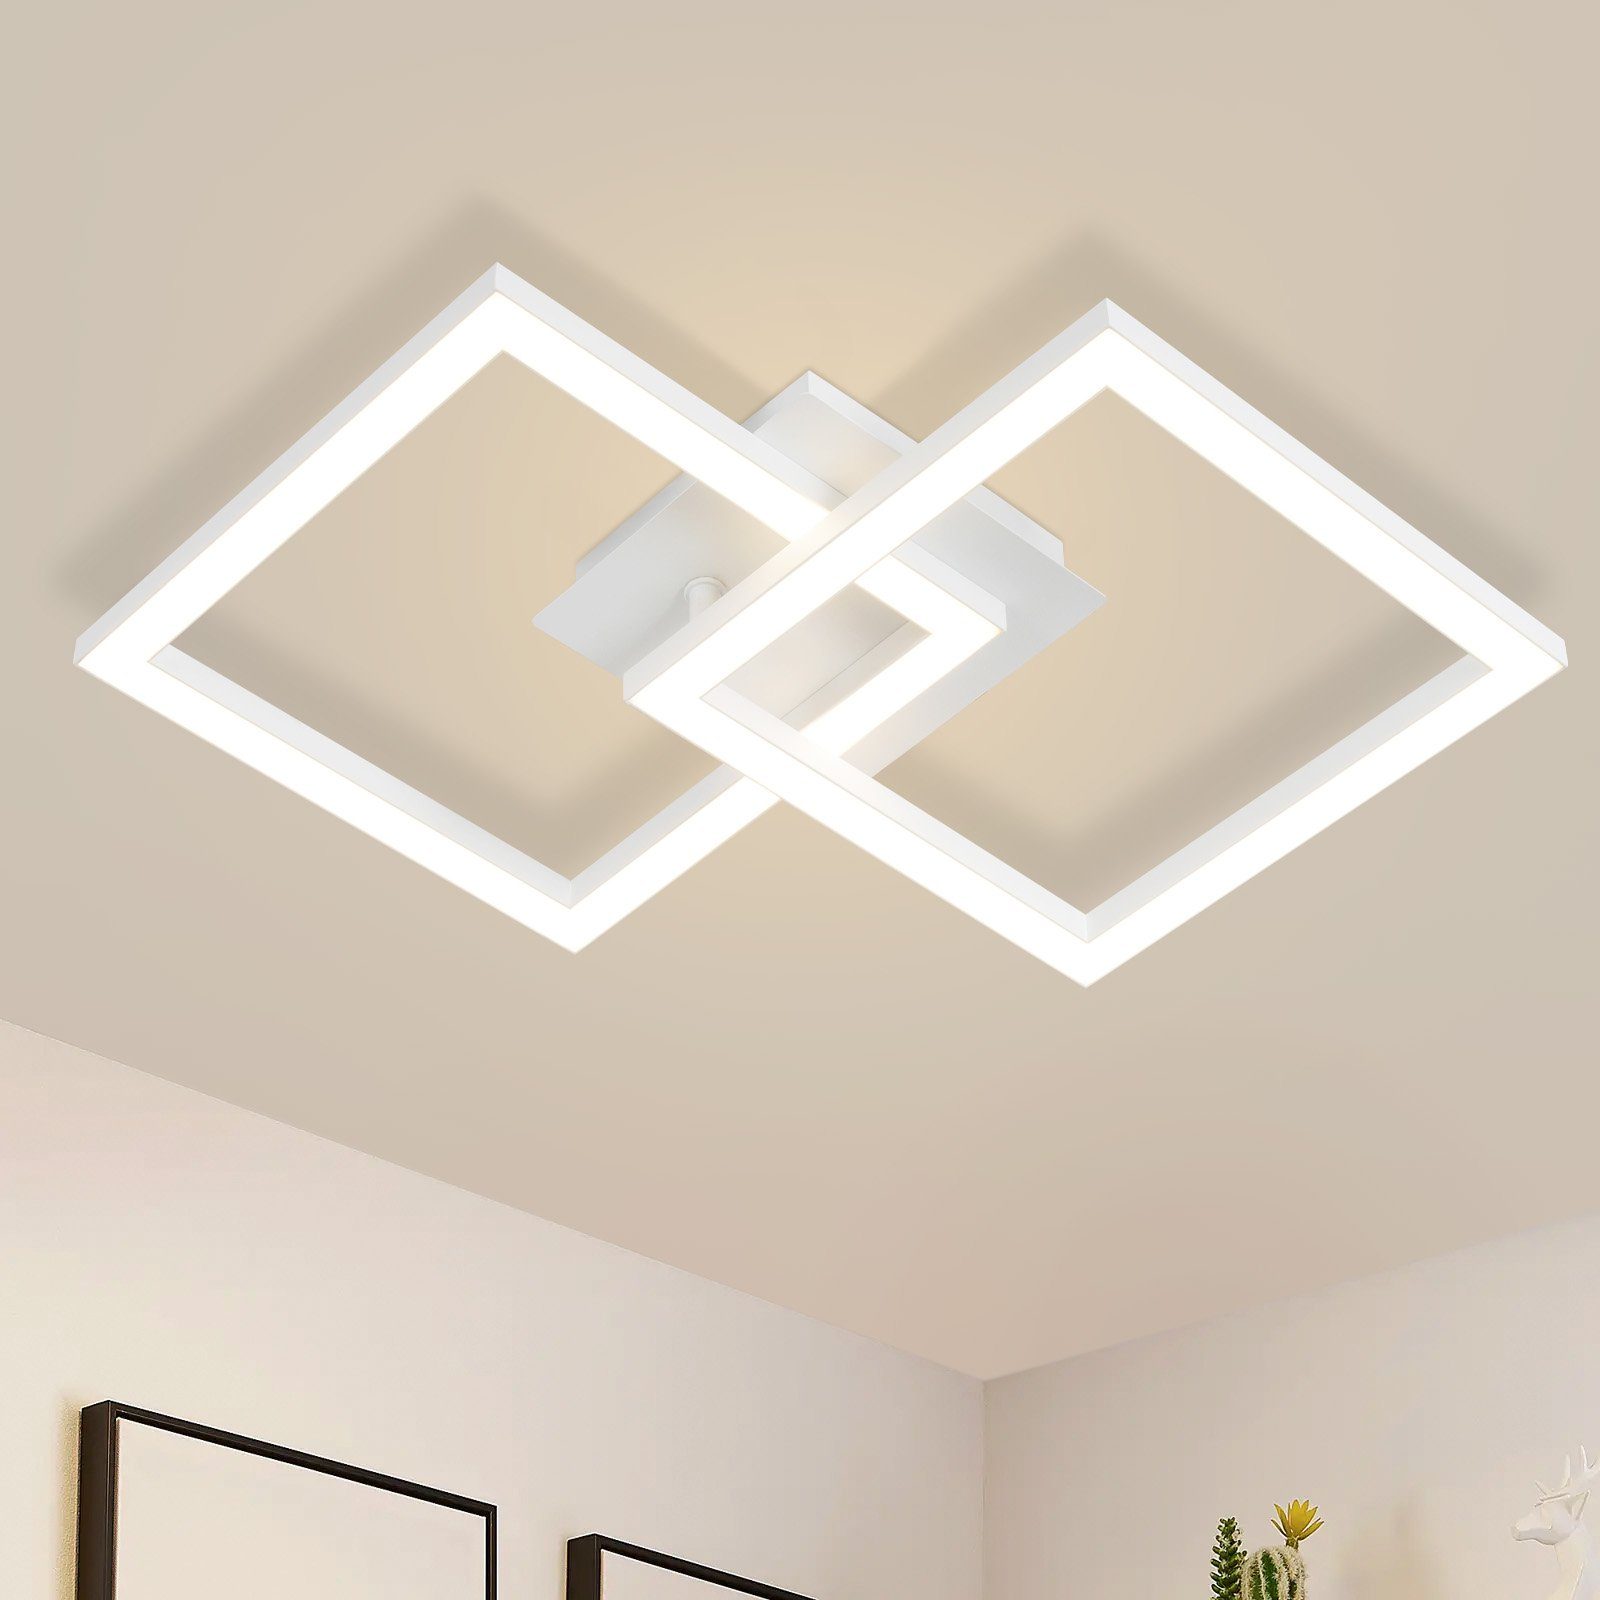 Öuesen Deckenleuchte LED 24w wasserdichte Lampe decke moderne quadratische  online kaufen